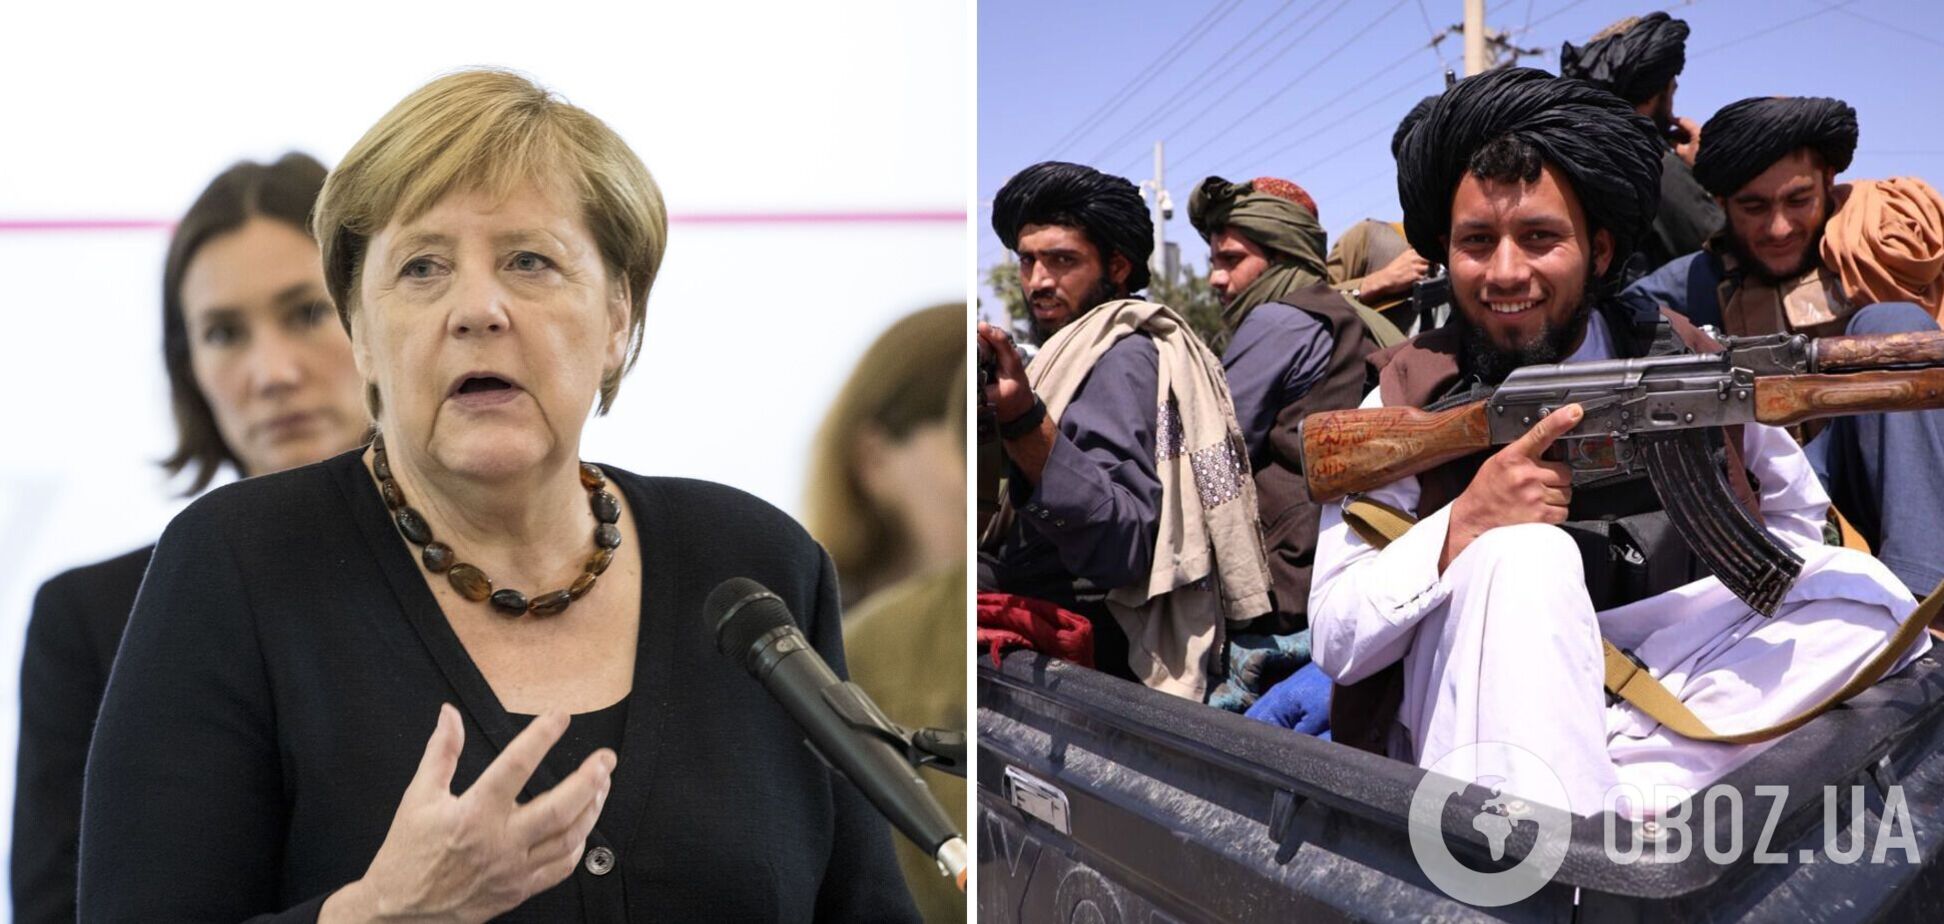  Меркель выступила за начало переговоров с 'Талибаном'